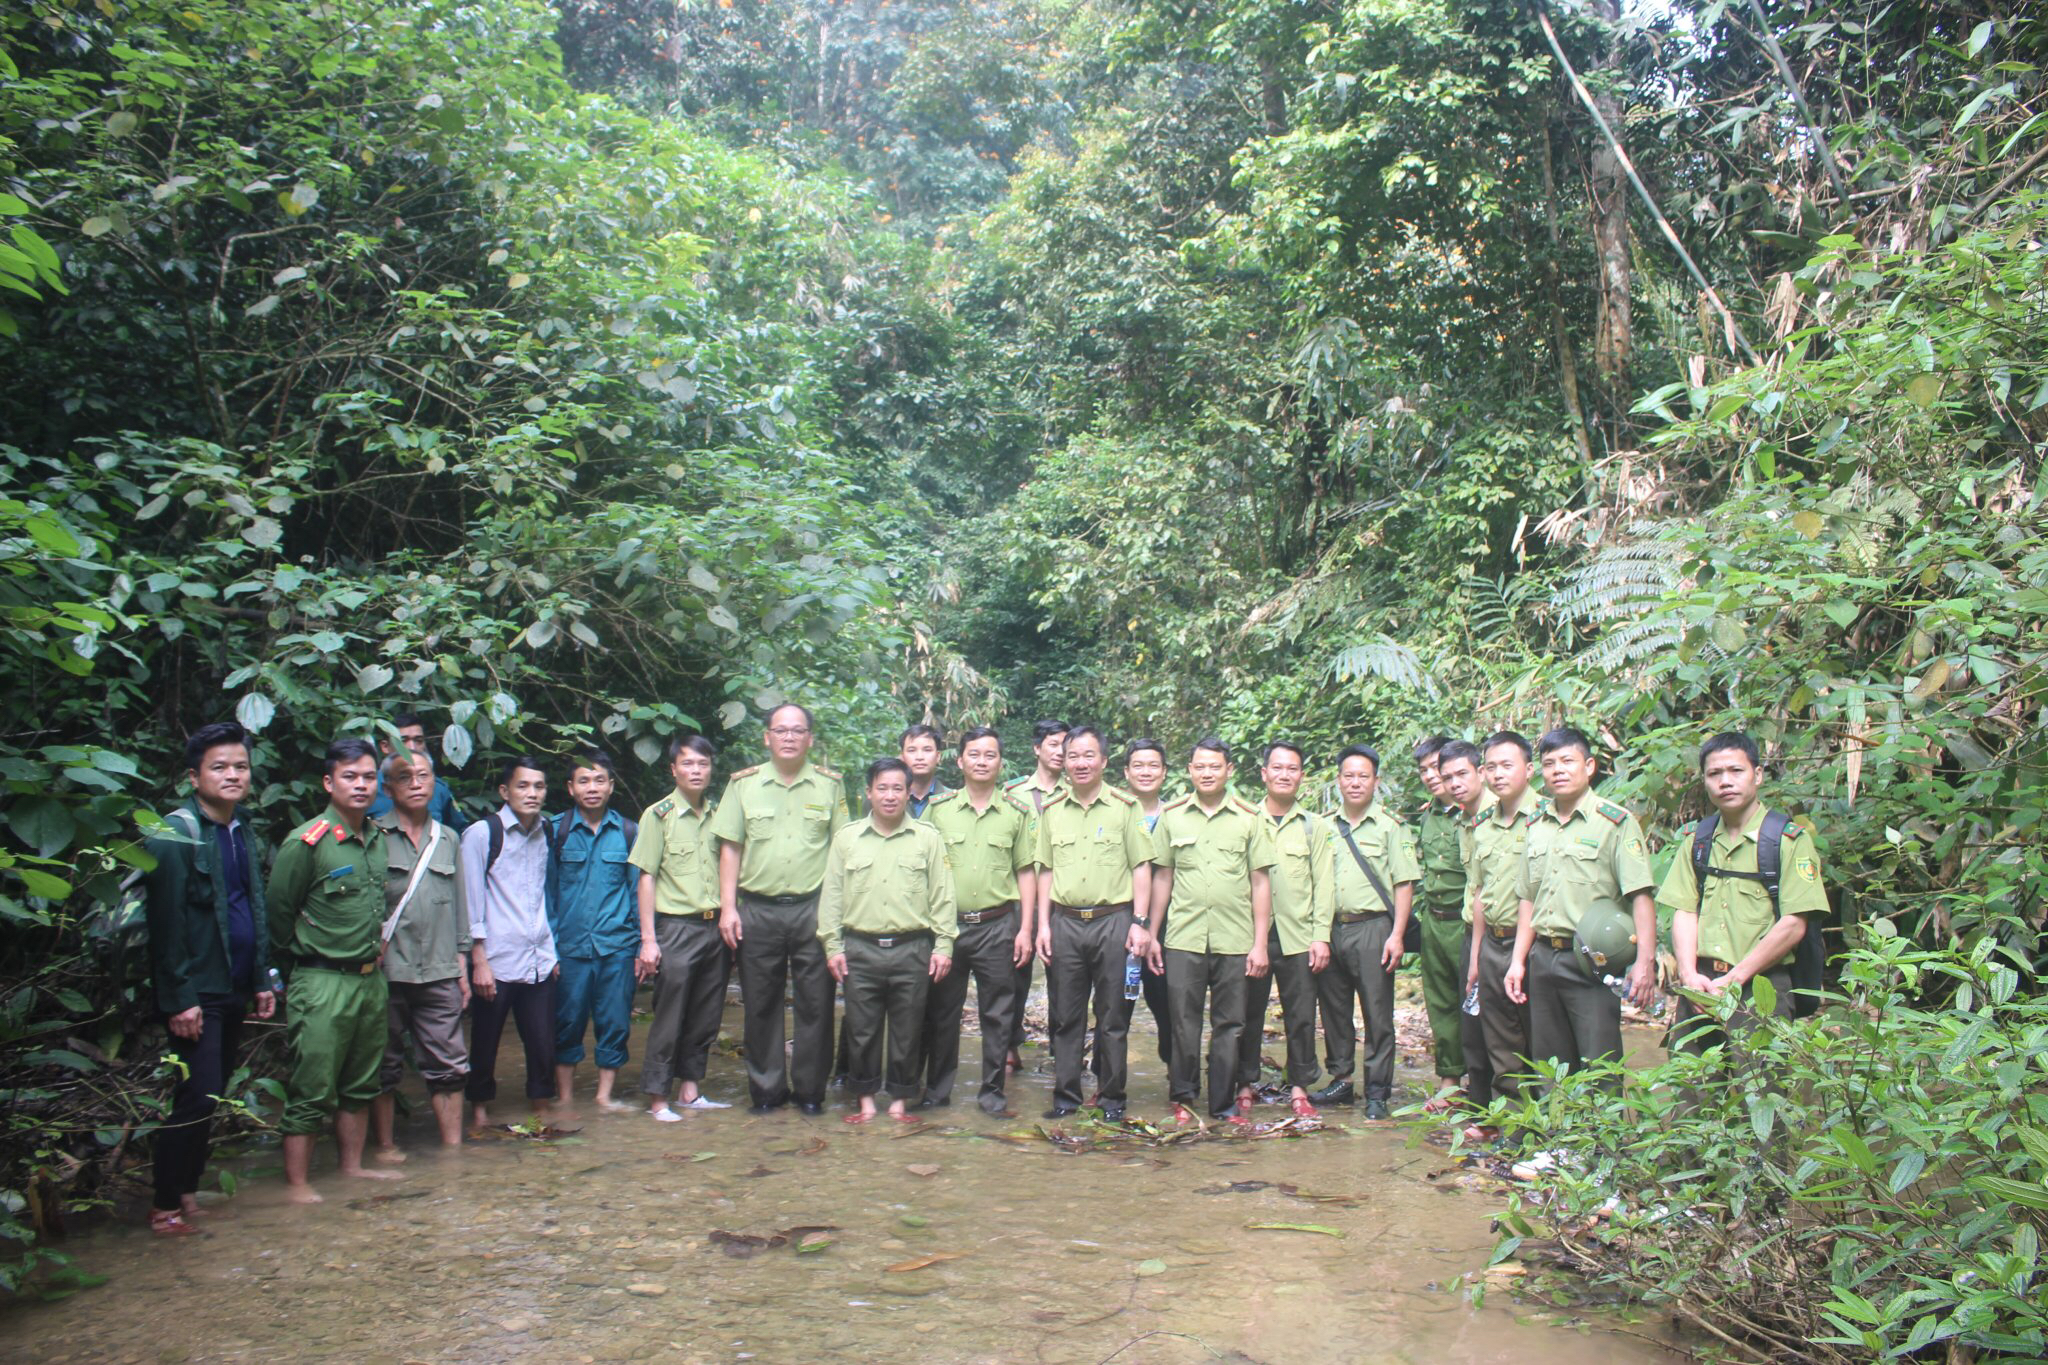 Chi cục Kiểm lâm vùng II phối hợp trong công tác tuyên truyền và tuần tra, kiểm tra an ninh rừng trên địa bàn Khu bảo tồn thiên nhiên Ngọc Sơn - Ngổ Luông, tỉnh Hòa Bình và khu vực giáp ranh